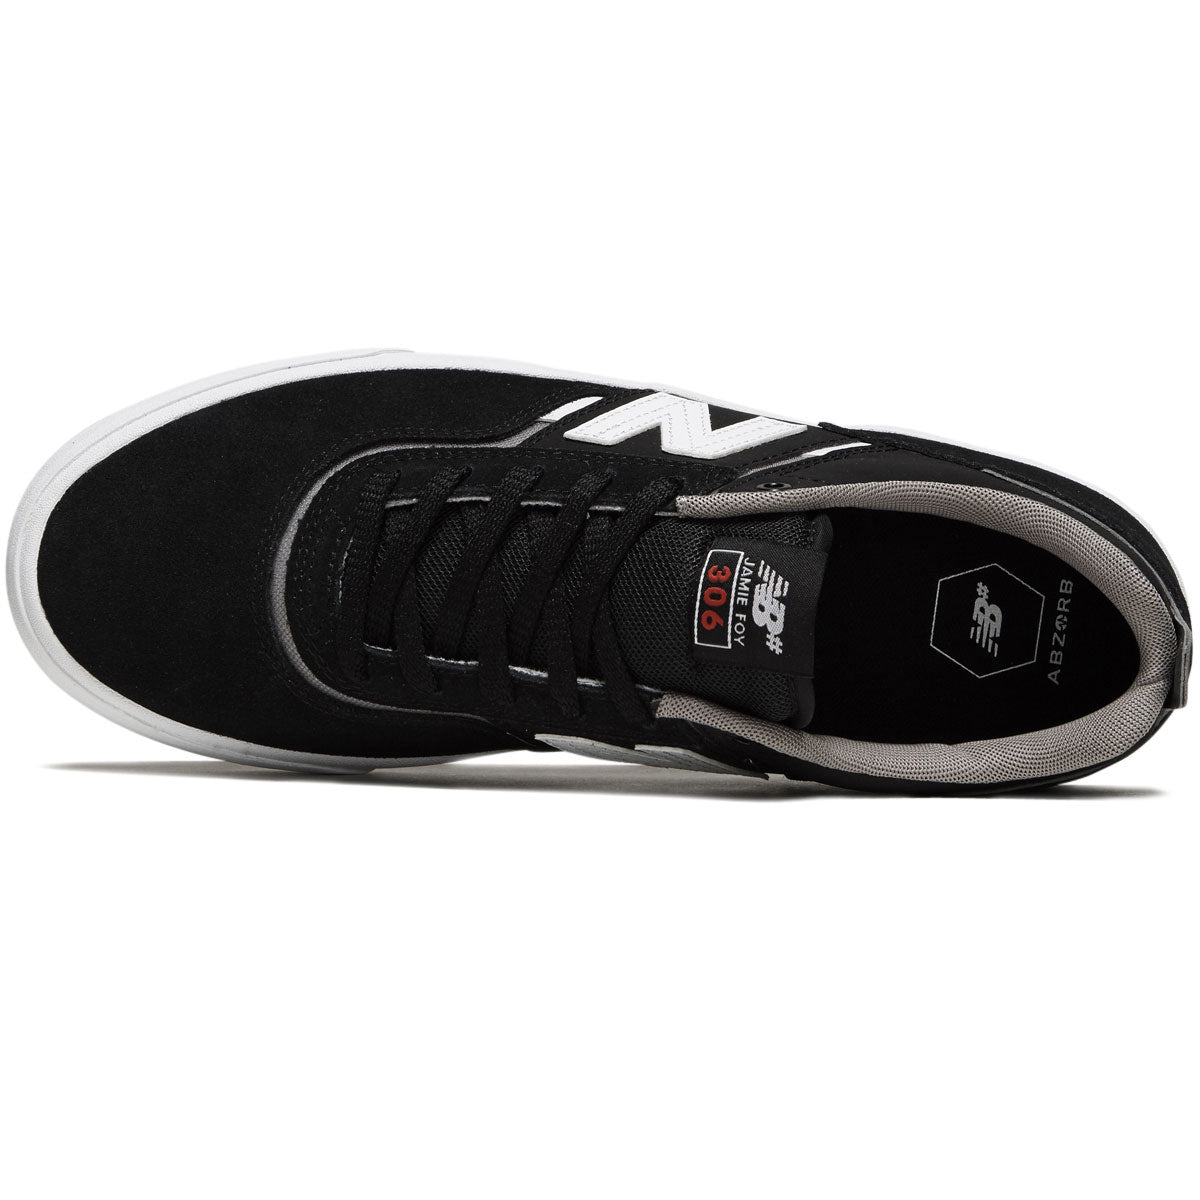 New Balance 306 Foy Shoes - Black/White/Grey image 3